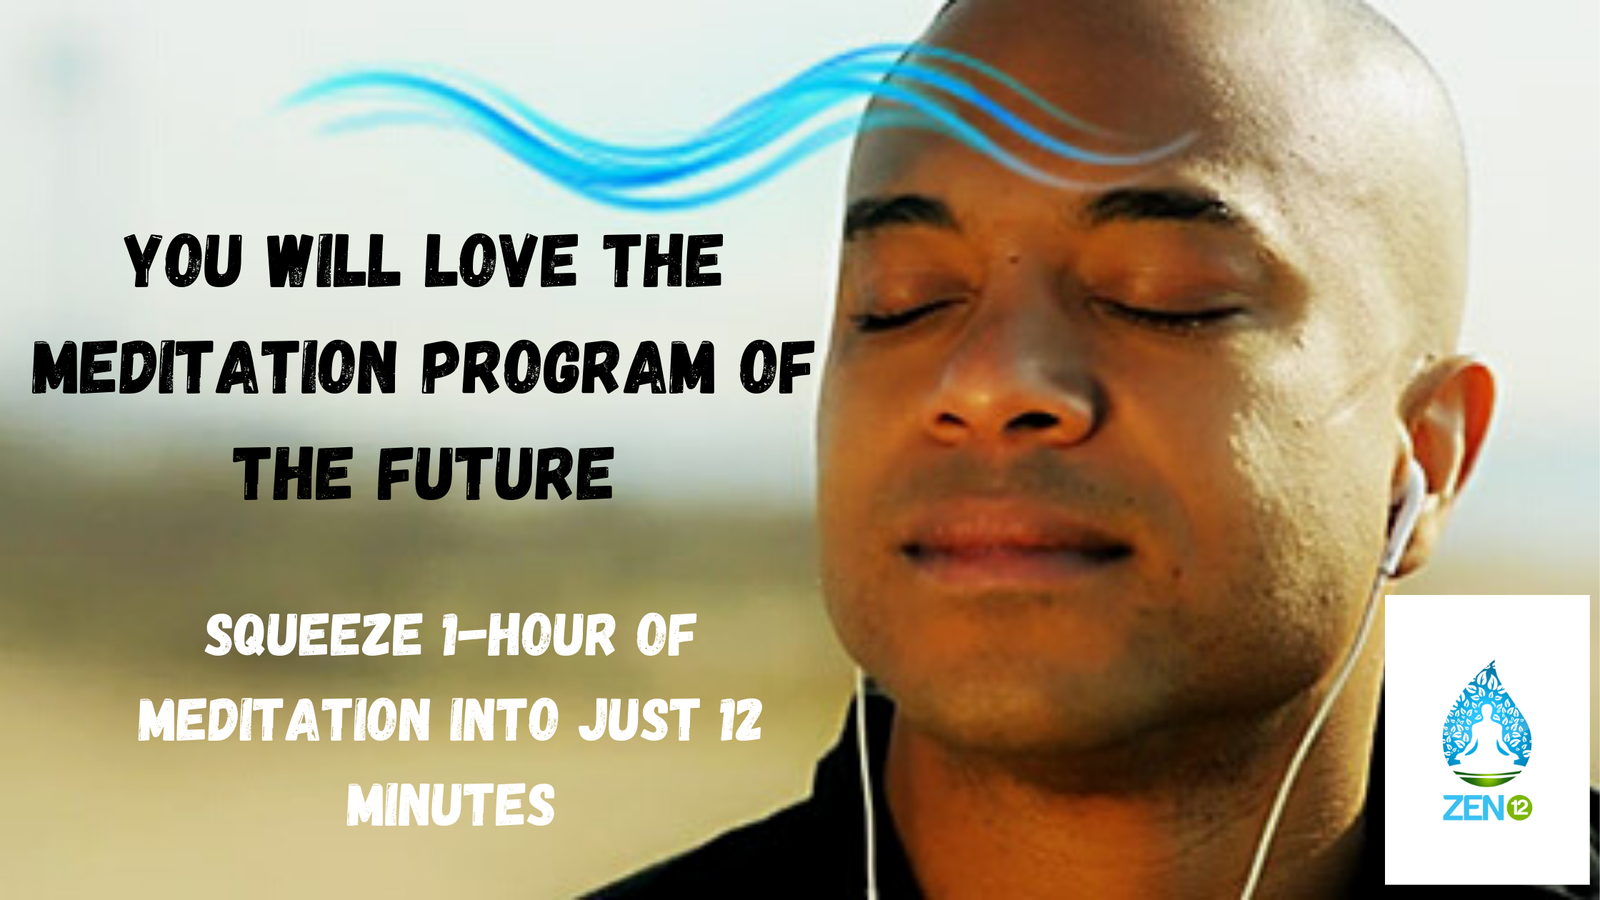 Zen12 a meditation program